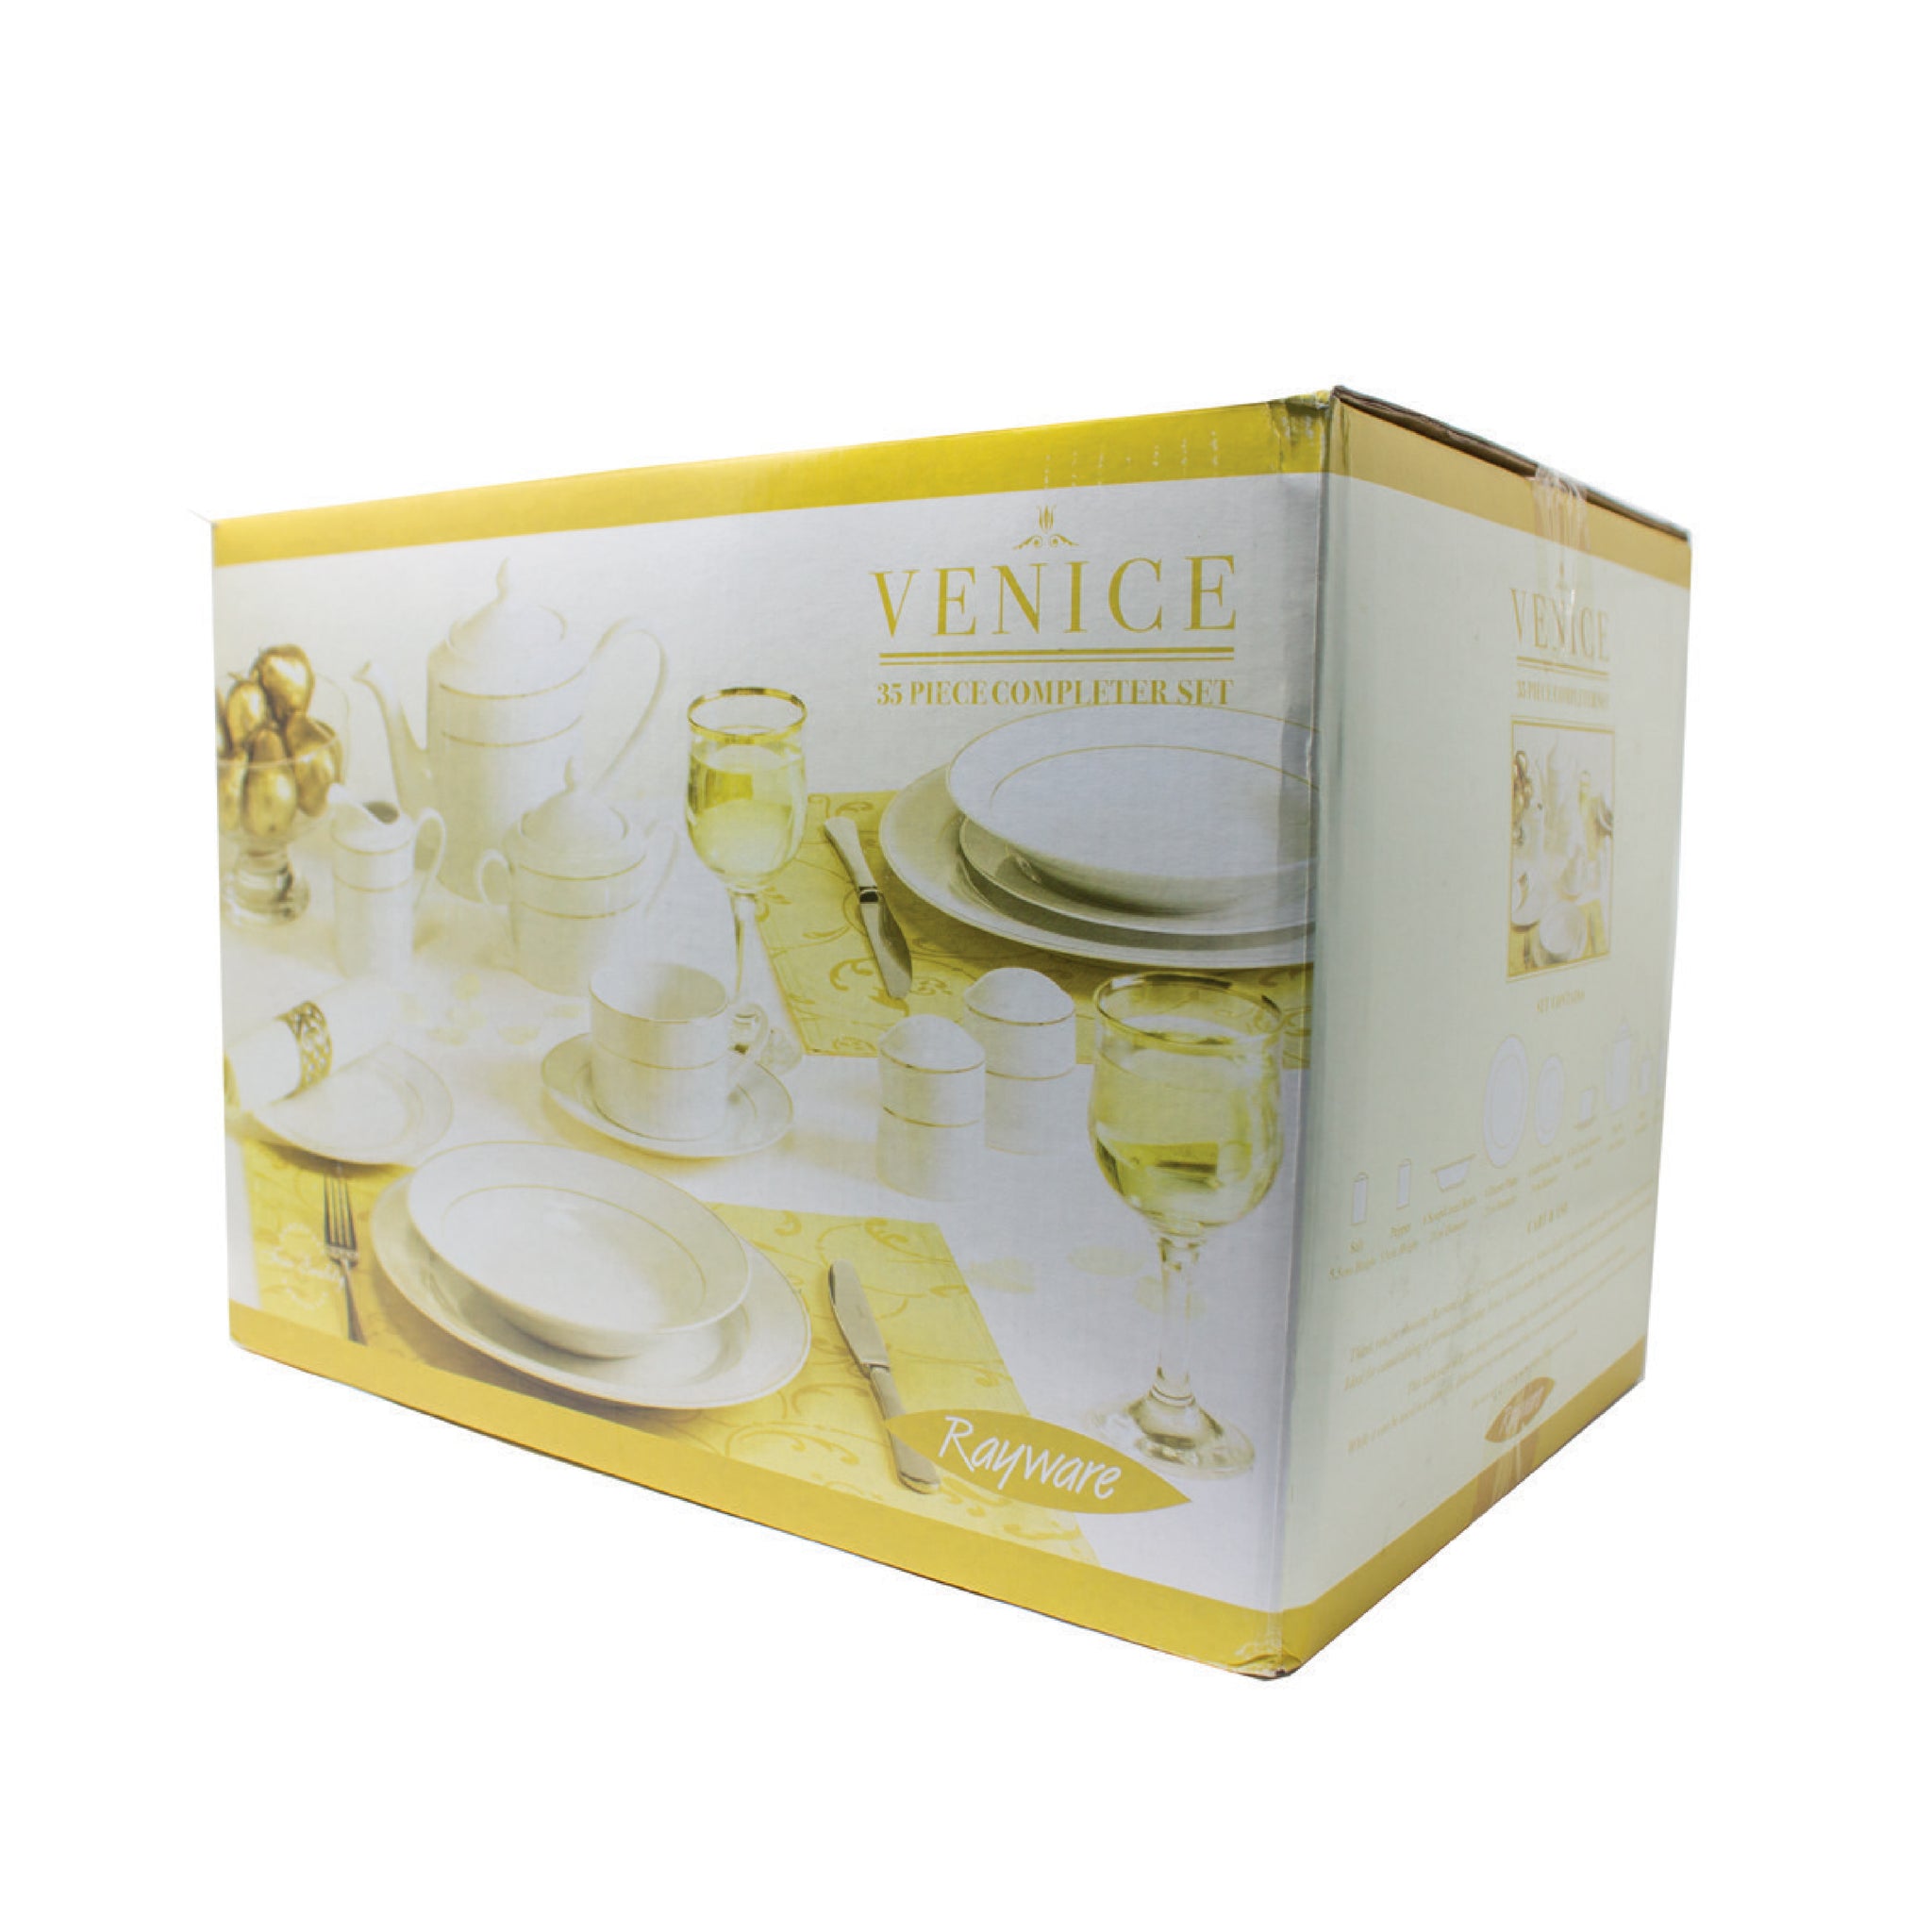 Venice 35 Piece Complete Dinner & Tea Set Gold